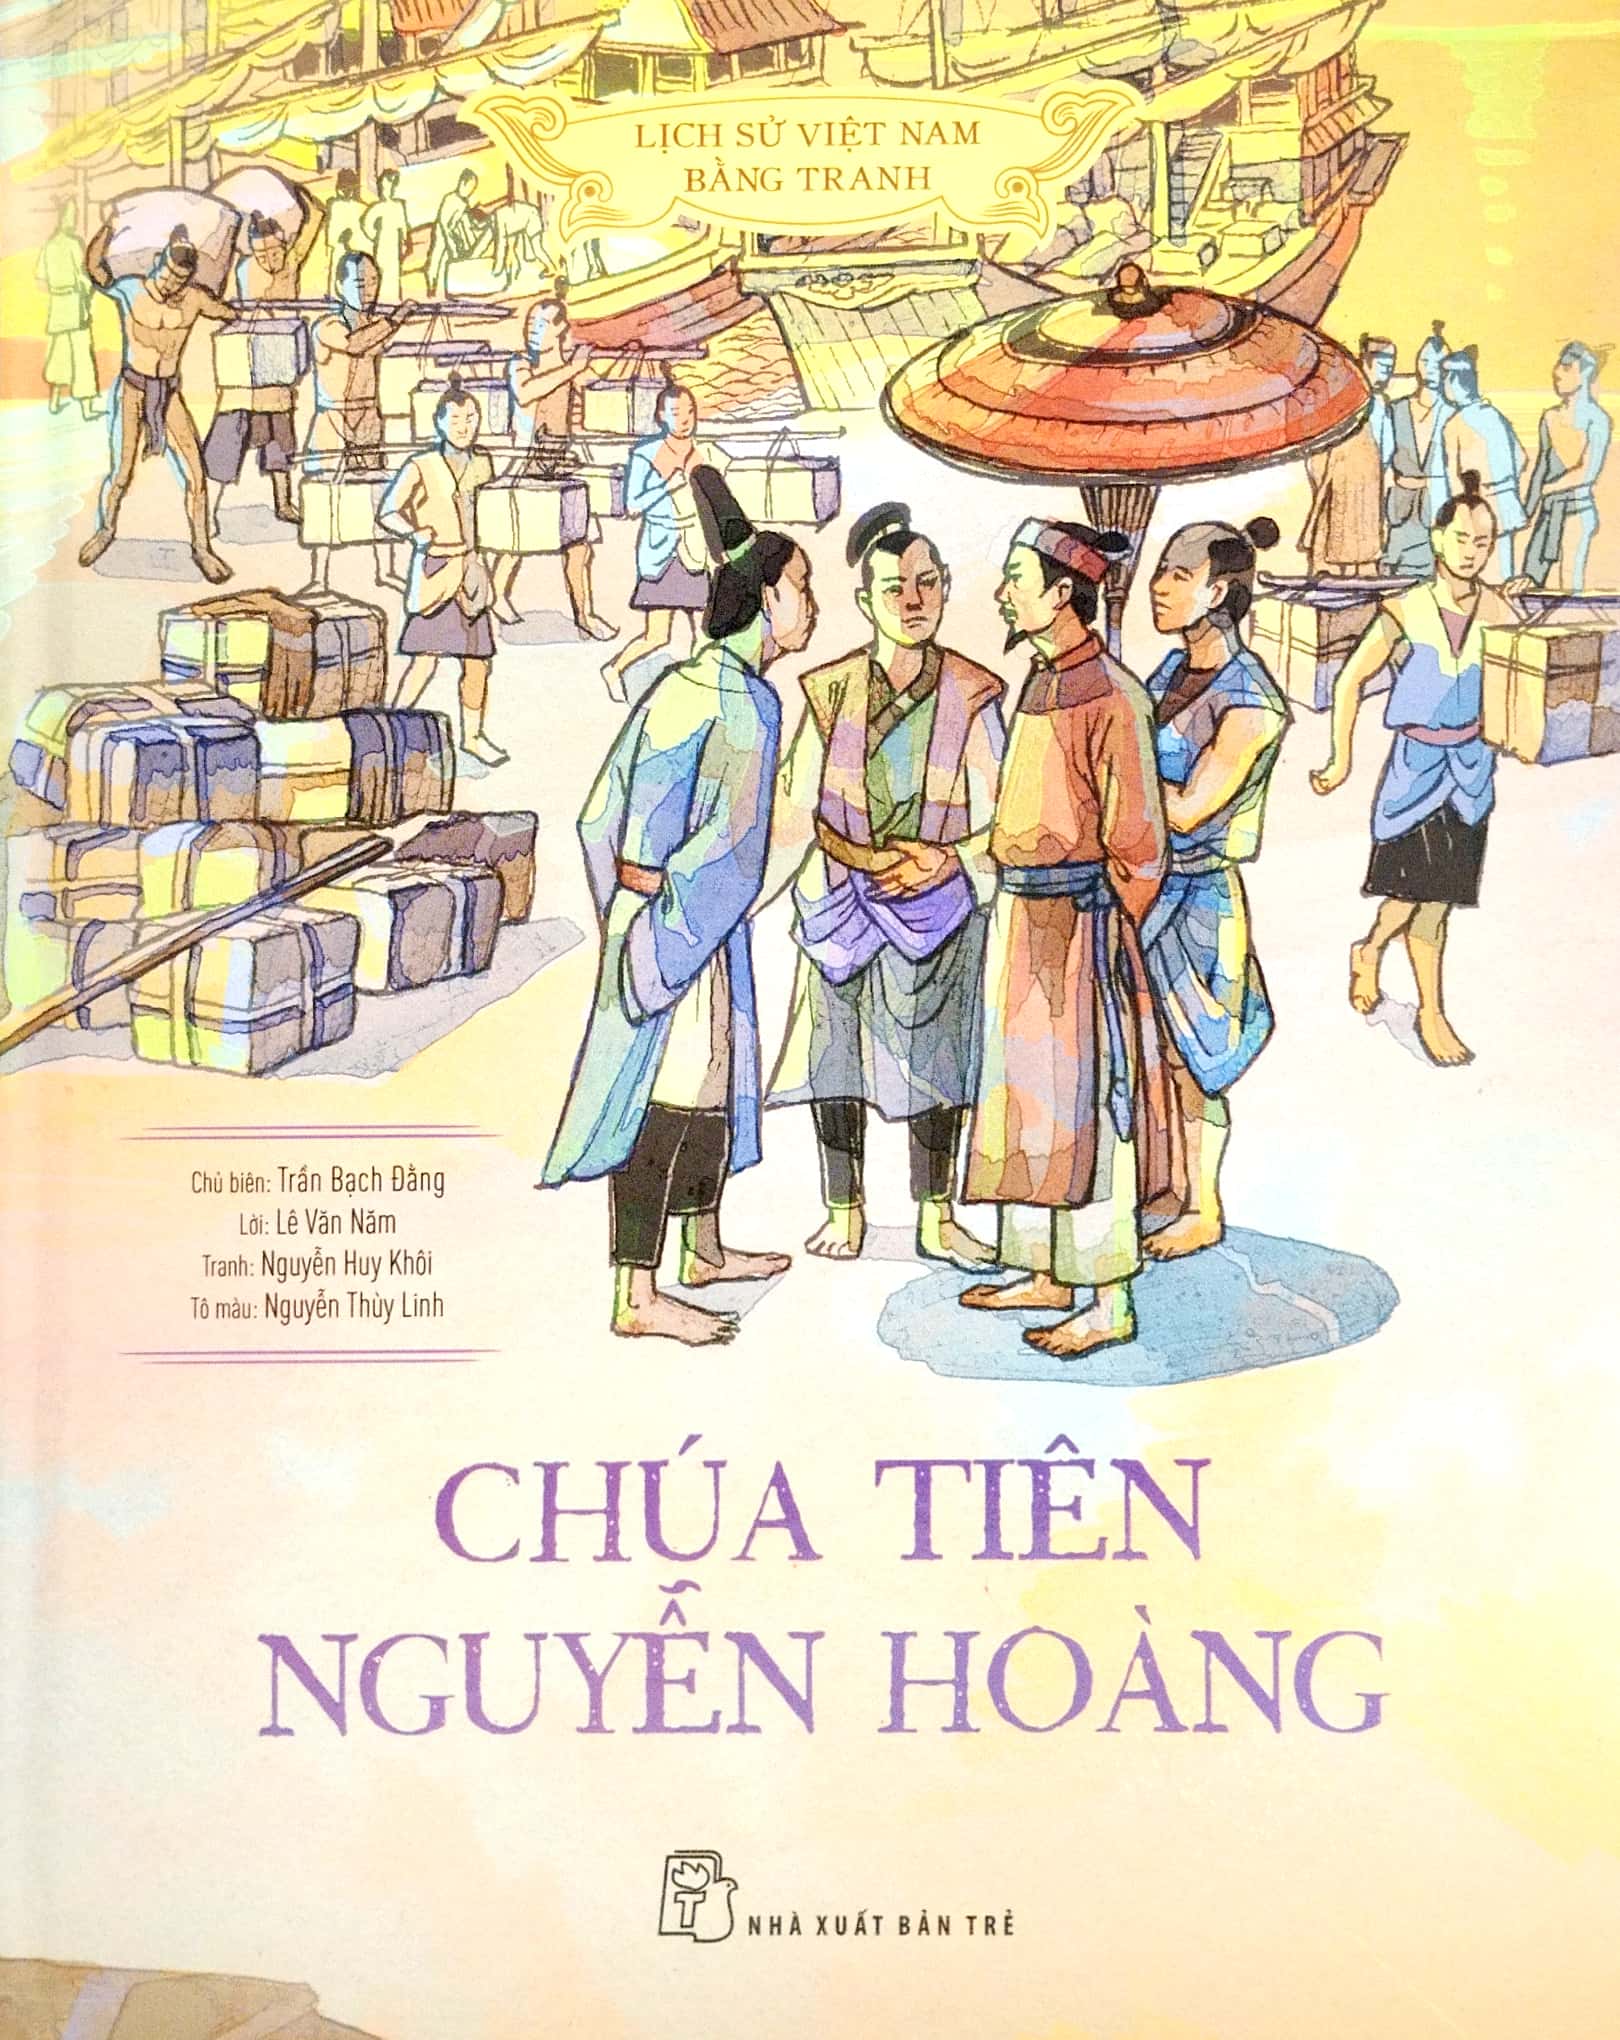 Lịch Sử Việt Nam Bằng Tranh - Bản Màu - Bìa Cứng Hộp 8 Cuốn PDF